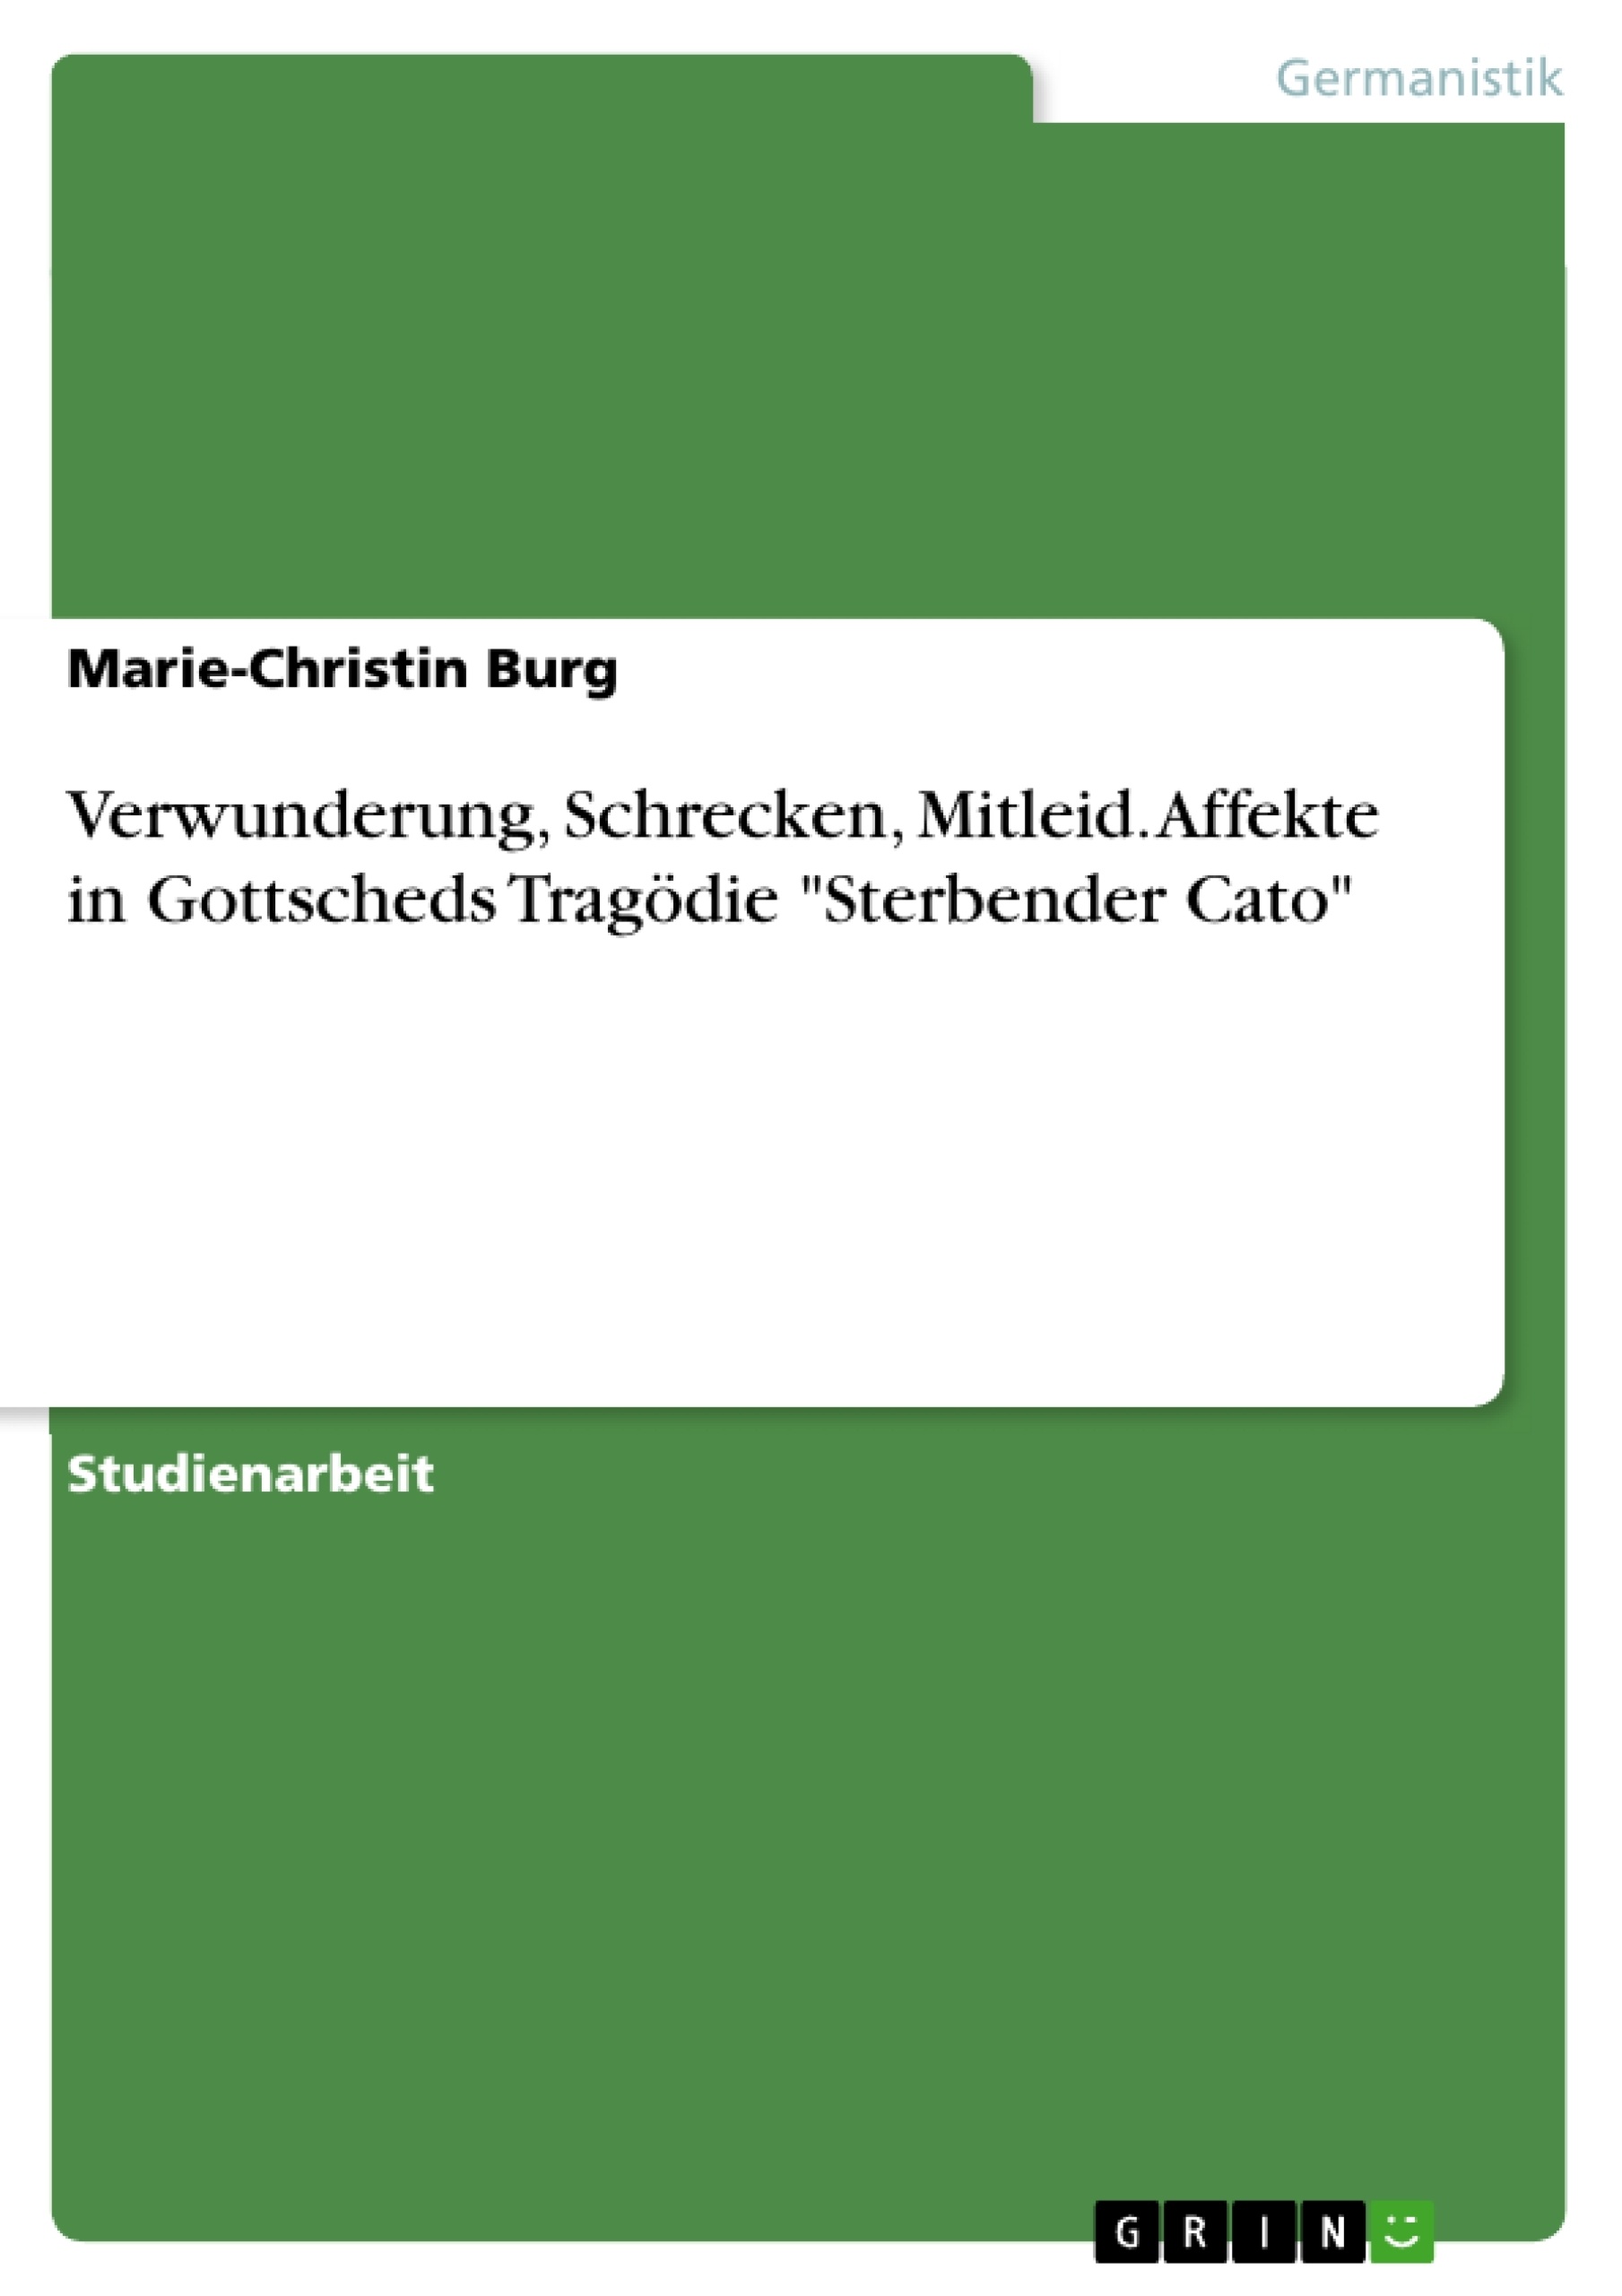 Título: Verwunderung, Schrecken, Mitleid. Affekte in Gottscheds Tragödie "Sterbender Cato"